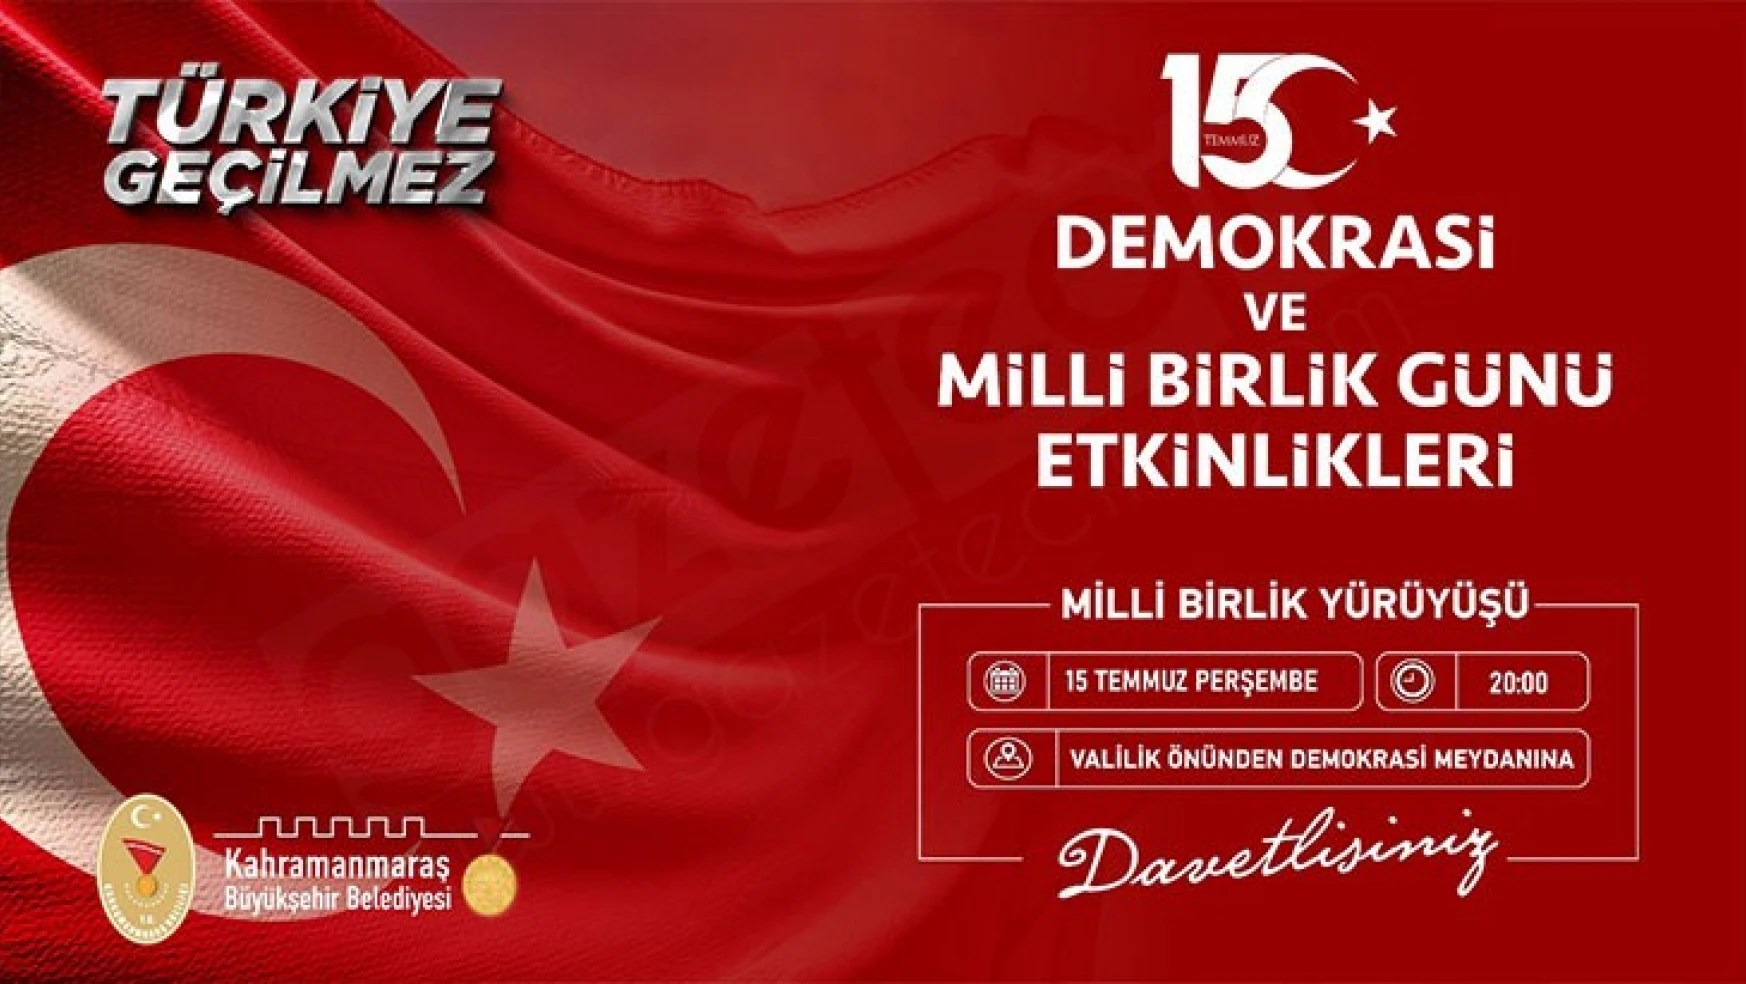 Kahramanmaraş'ta Milli Birlik Yürüyüşü düzenlenecek